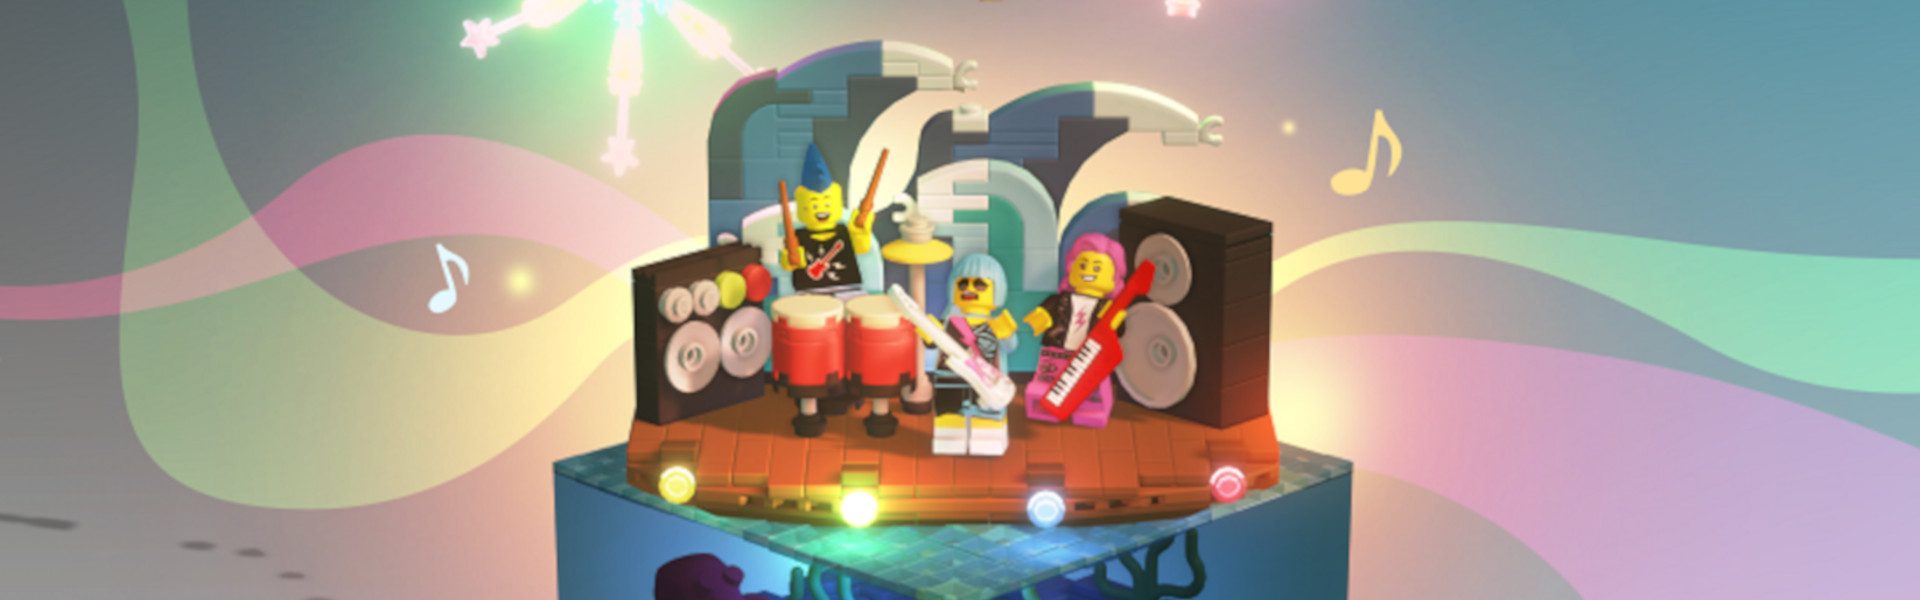 Rozbujaj klocek w DLC Lego Bricktales